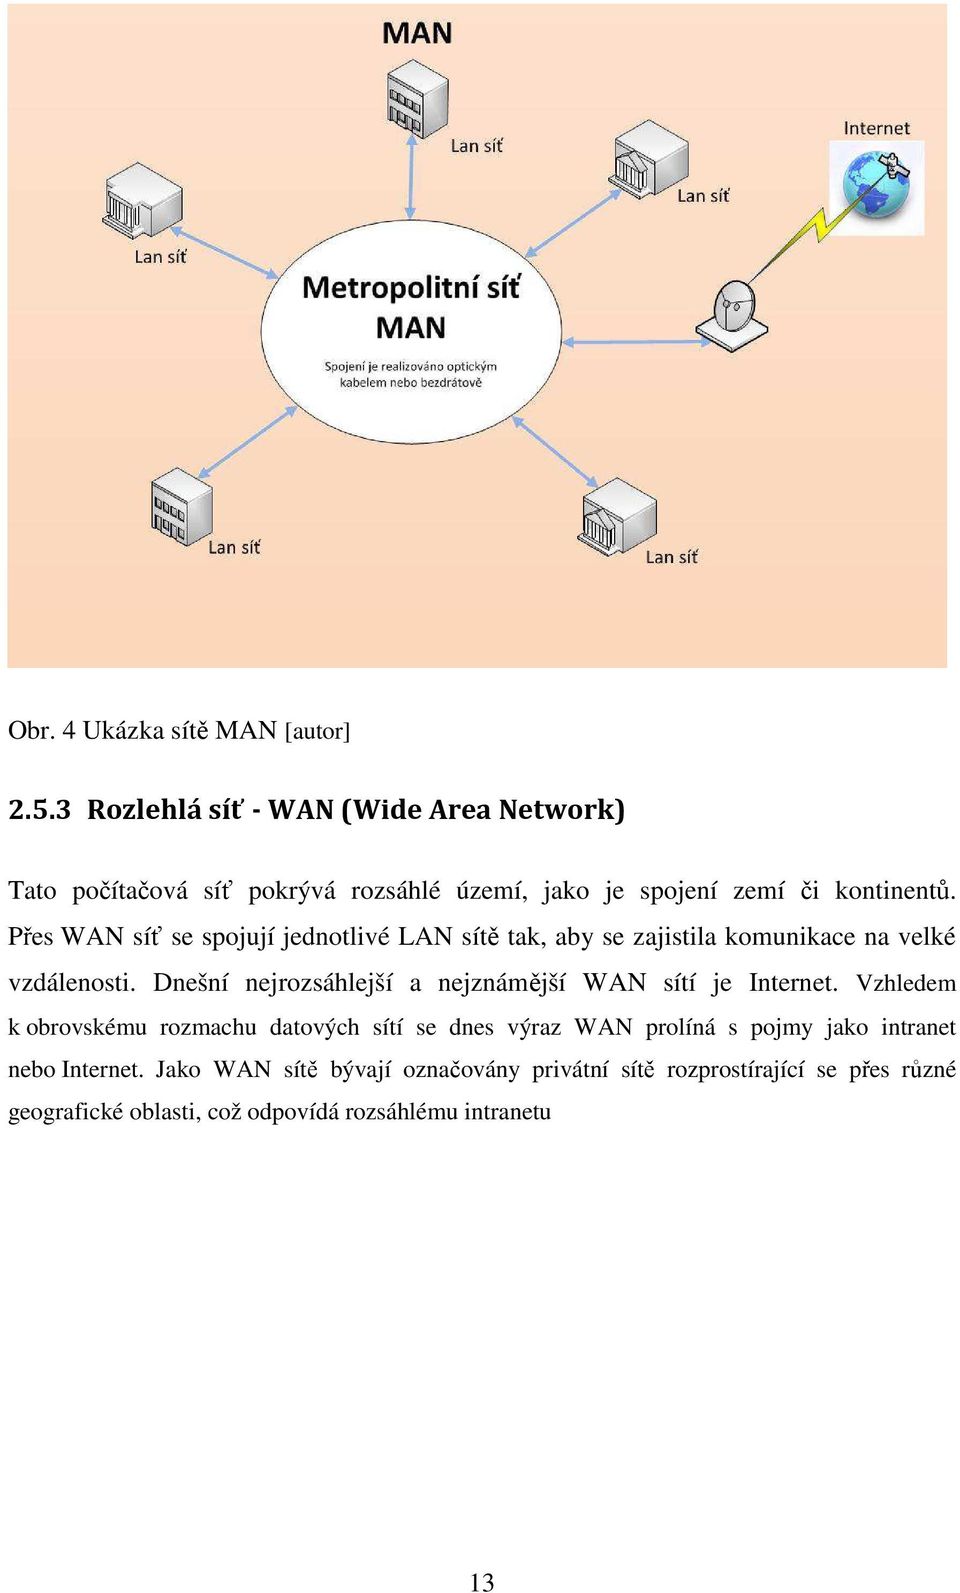 Přes WAN síť se spojují jednotlivé LAN sítě tak, aby se zajistila komunikace na velké vzdálenosti.